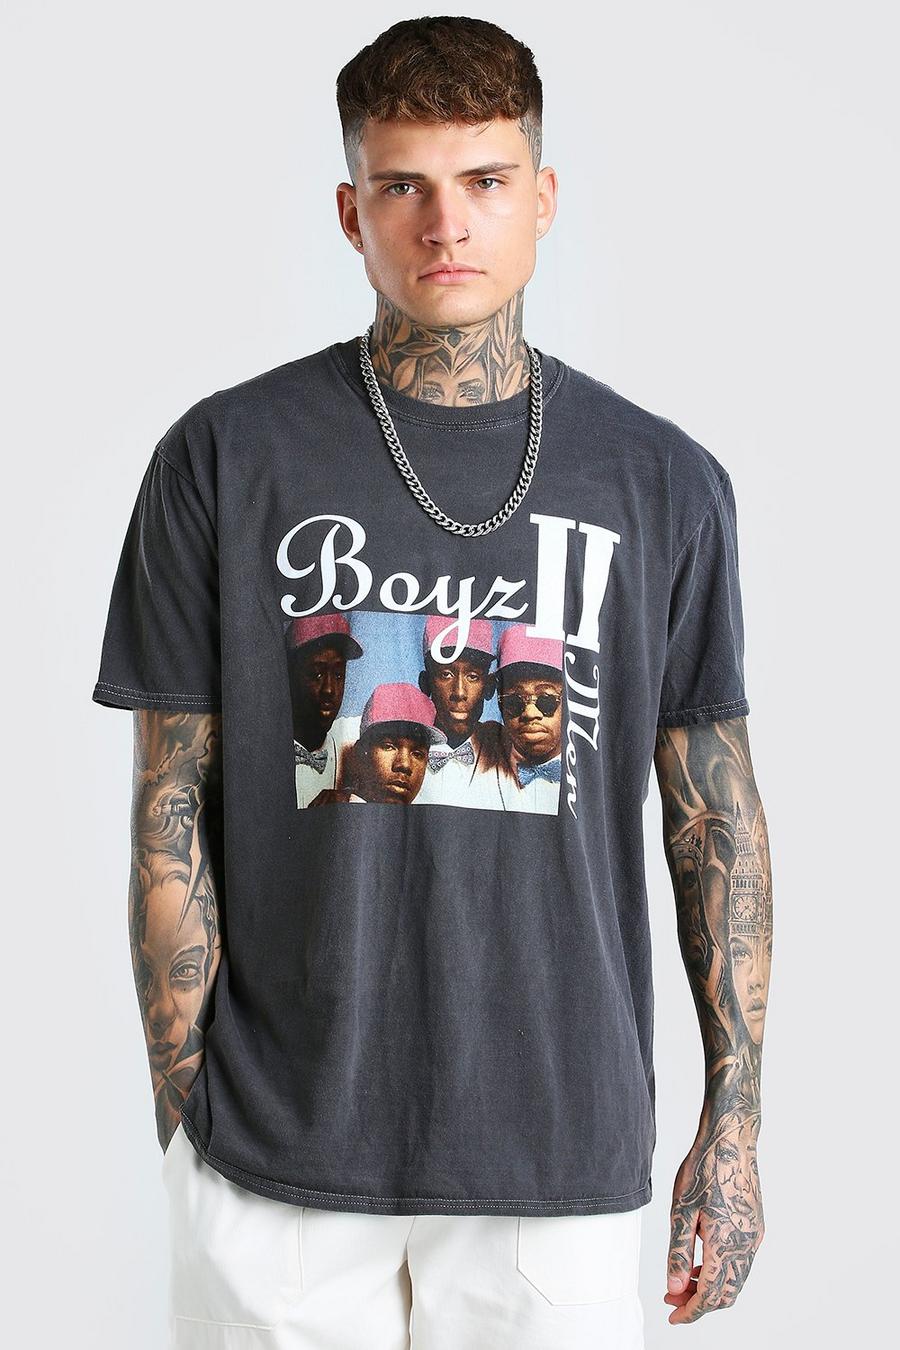 Charcoal grå 'Boys 2 Men' Överfärgad oversize t-shirt med tryck